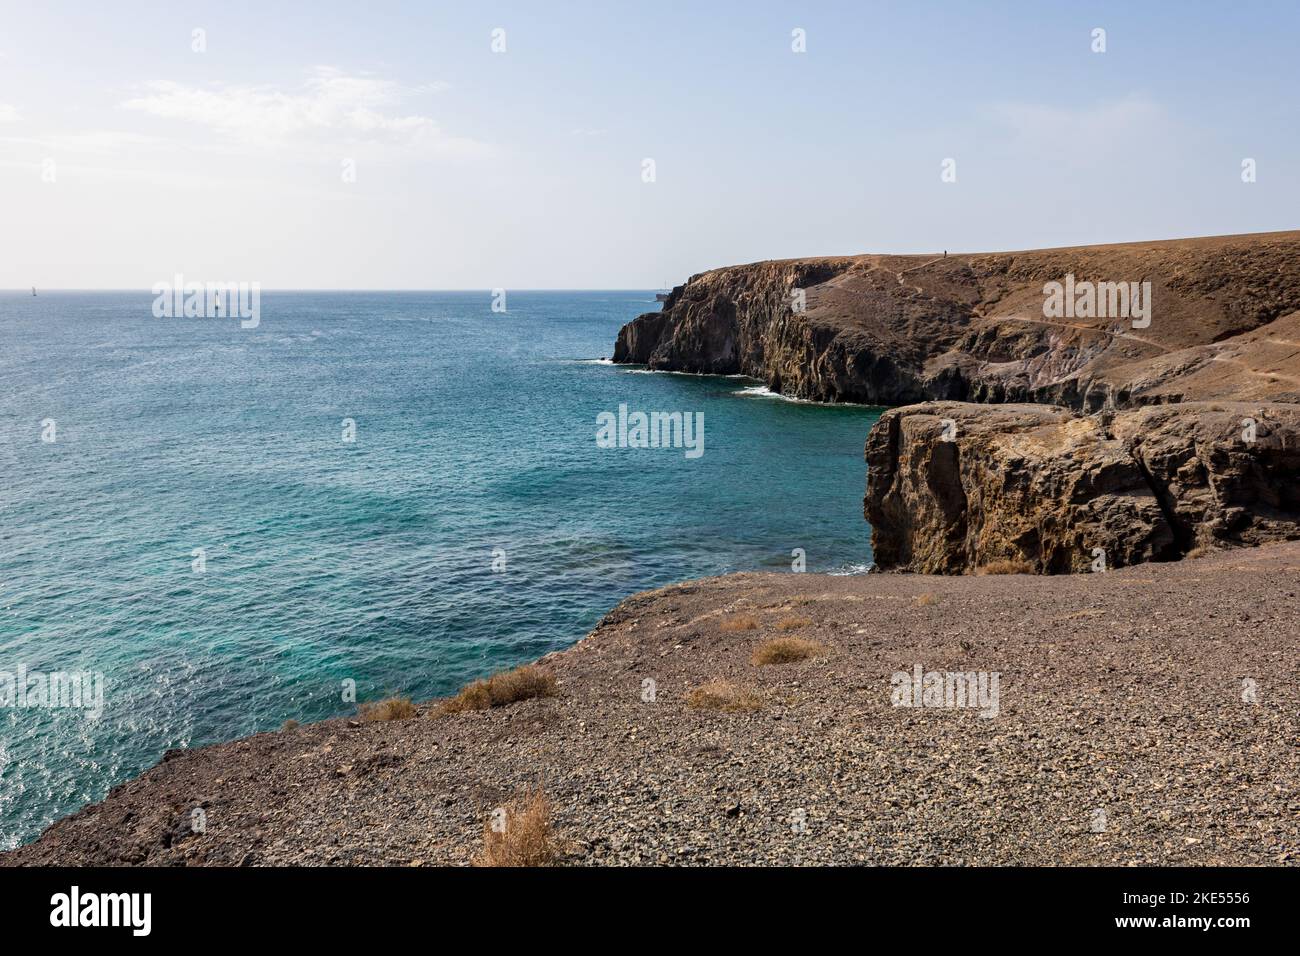 Vista panoramica delle scogliere sulla costa rocciosa vicino a Playa Mujeres, Playa Blanca, Yaiza, Lanzarote, Las Palmas, Isole Canarie, Spagna, Europa. Foto Stock